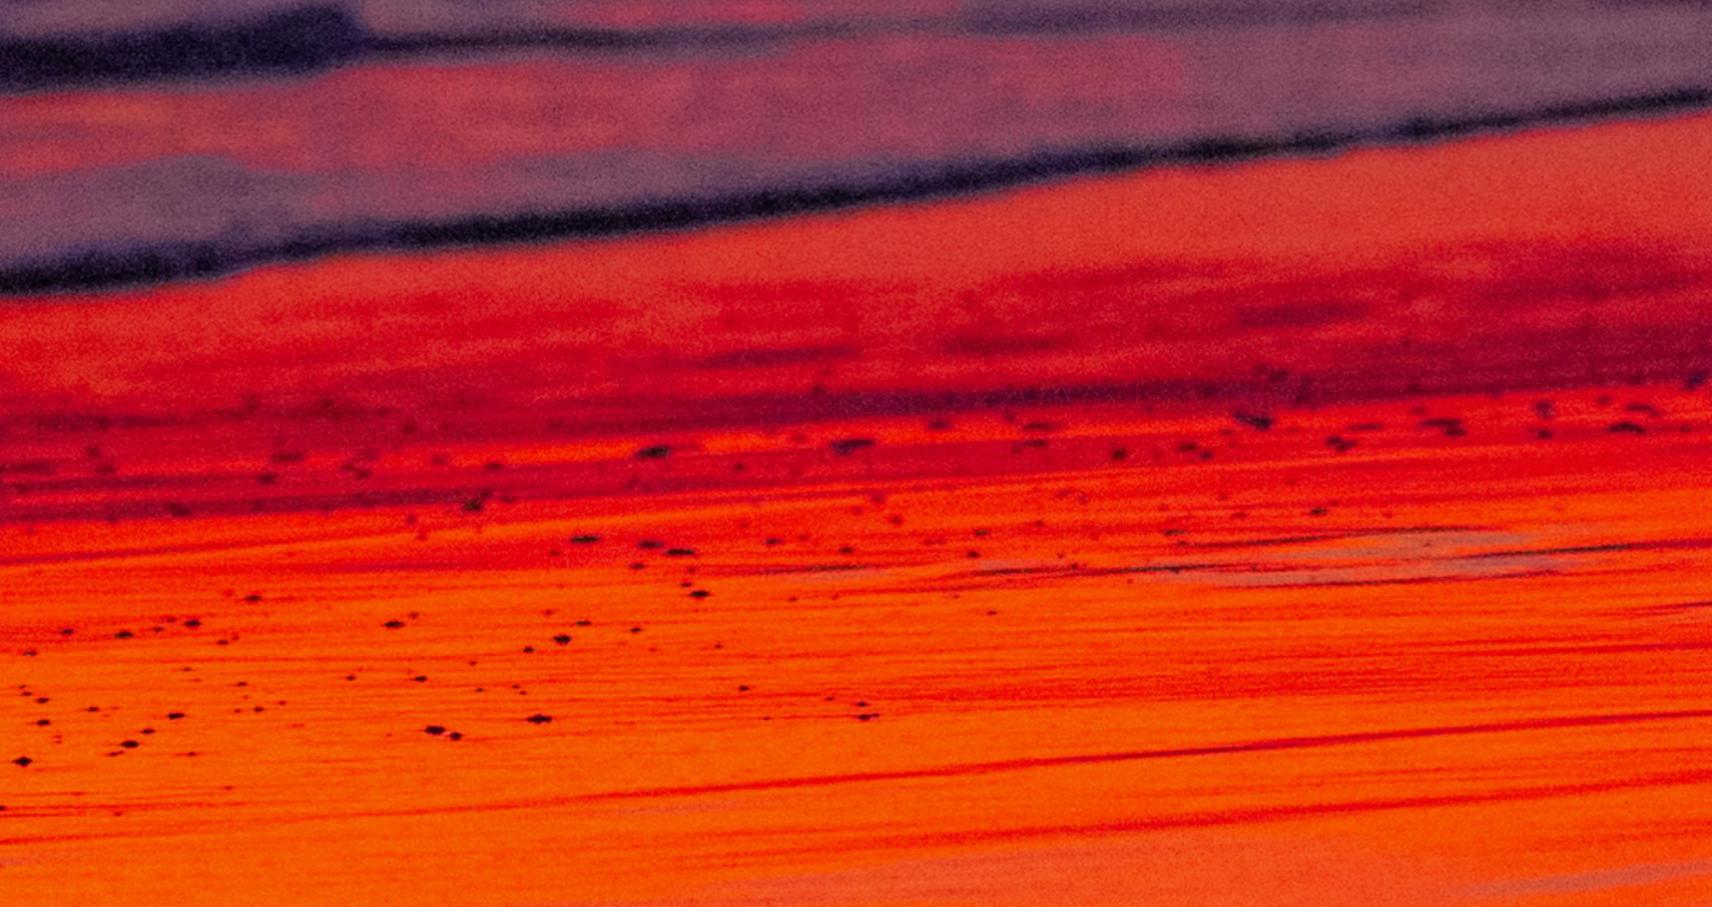 Teil der Kollektion The Shape of Water des spanischen Fotografen Cuco de Frutos. Dieses Originalfoto fängt den gemalten Himmel ein, das Feuer, das in der Erde versinkt und uns daran erinnert, wie schön die Welt sein kann. Die Gelassenheit und